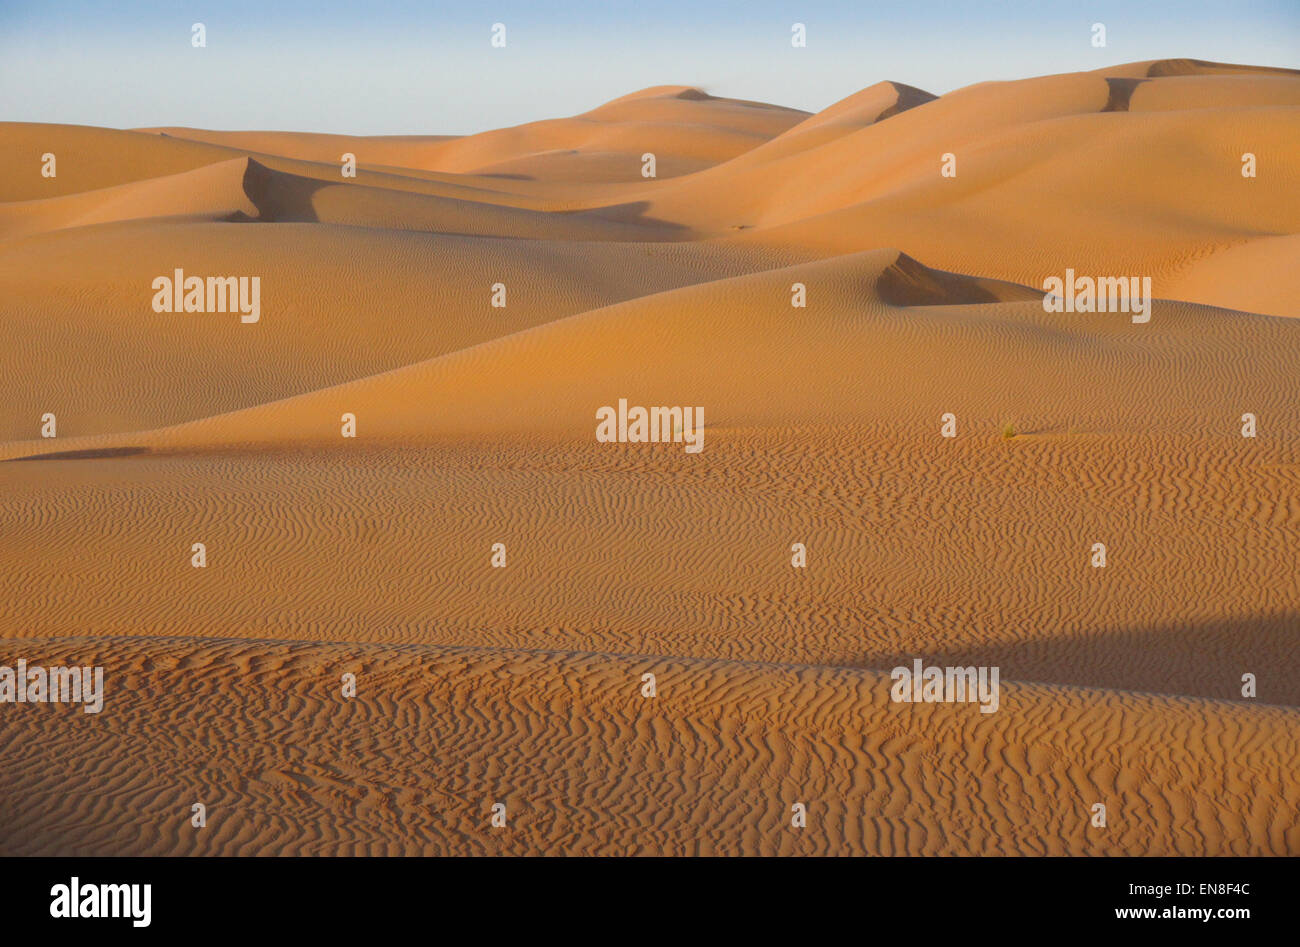 Contours of sand dunes at Liwa, Abu Dhabi, UAE Stock Photo